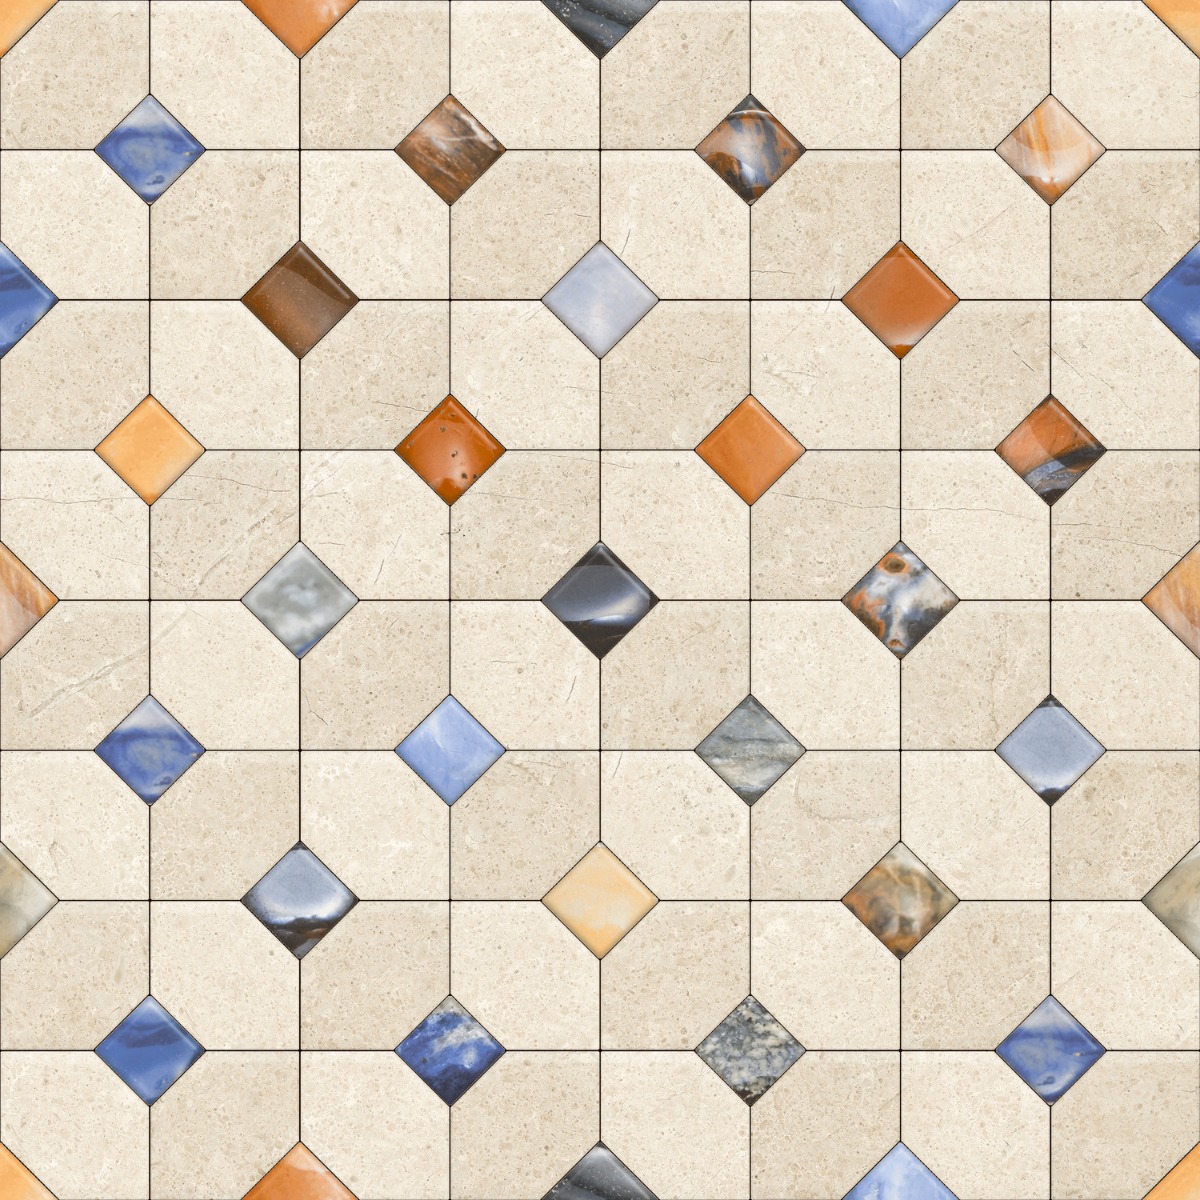 Blue Tiles for Bathroom Tiles, Balcony Tiles, Swimming Pool Tiles, Hospital Tiles, Bar/Restaurant, Commercial/Office, Outdoor/Terrace